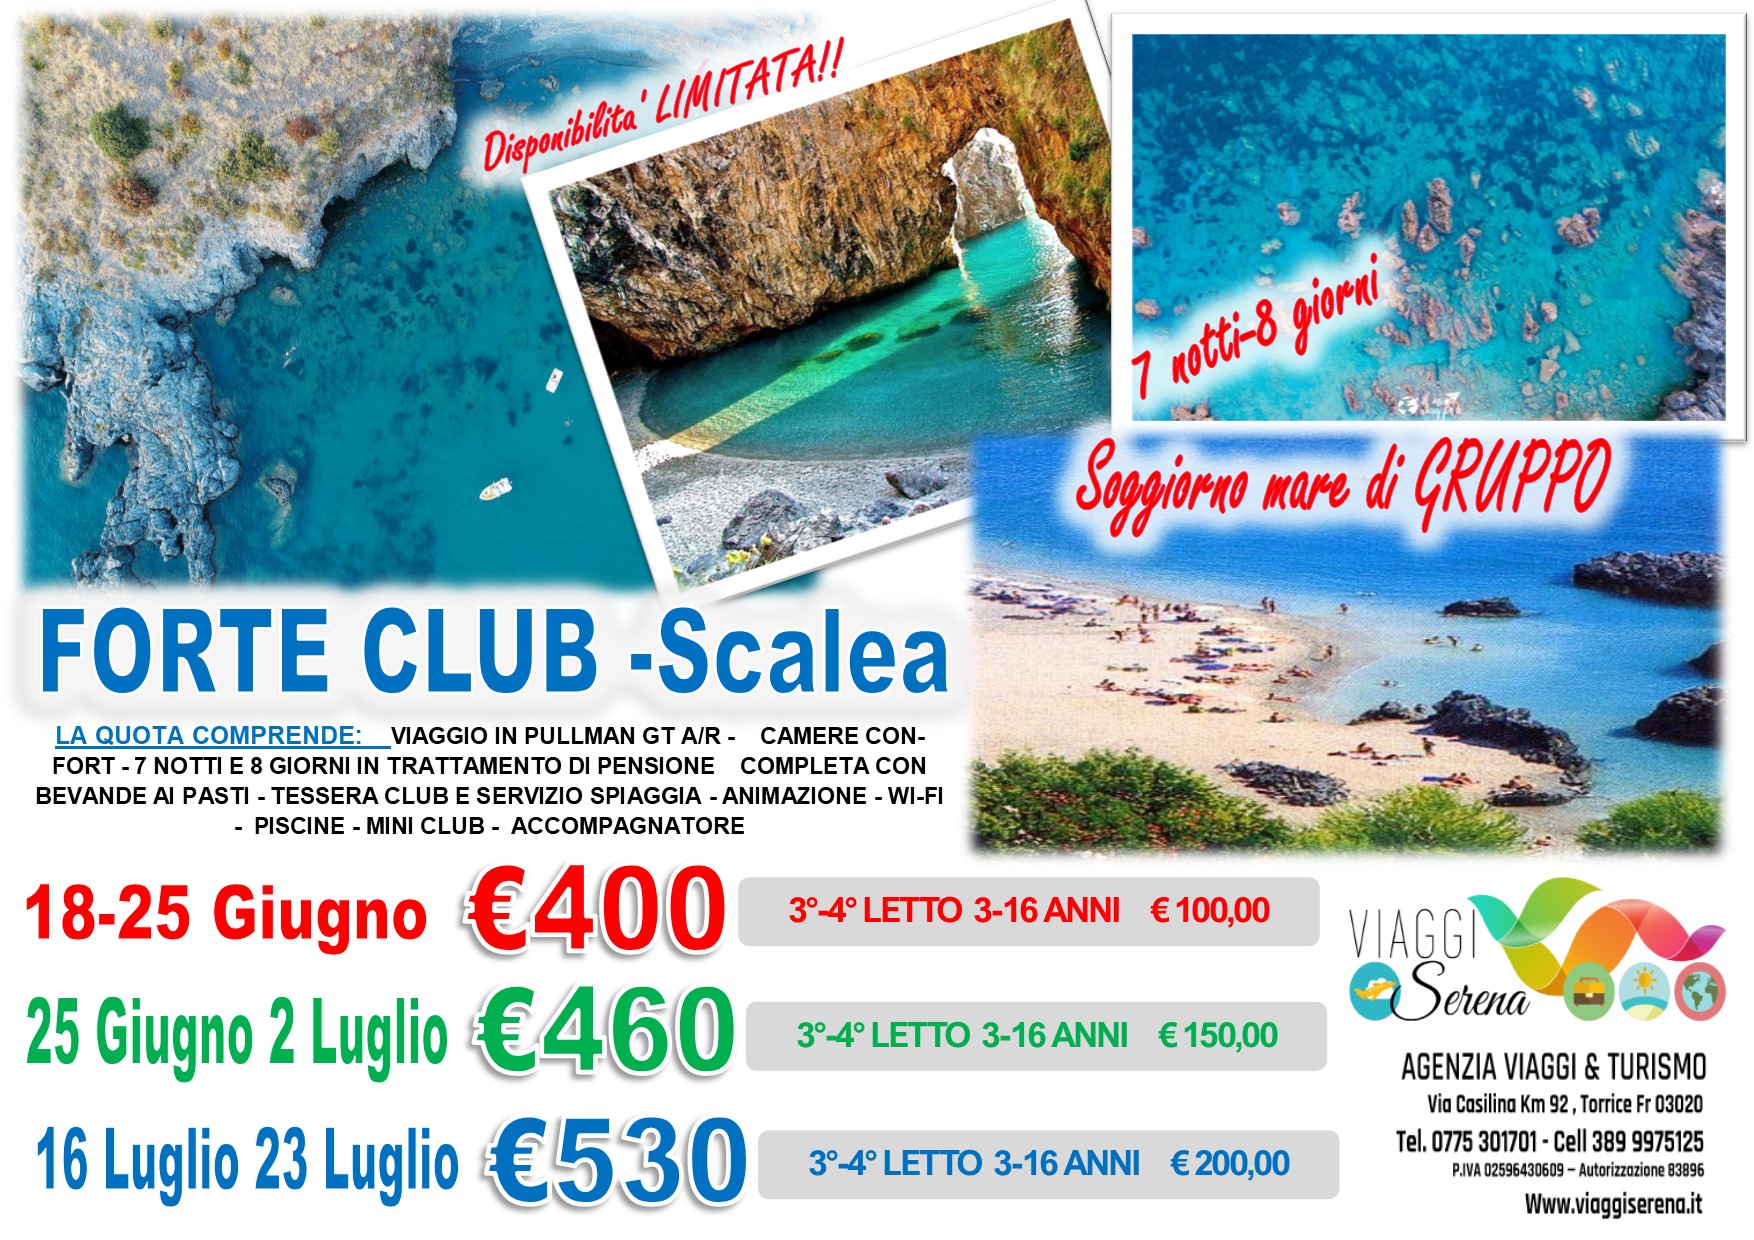 Viaggi di Gruppo: Soggiorno Mare “Villaggio Forte Club” Scalea 18-25 Giugno €400,00